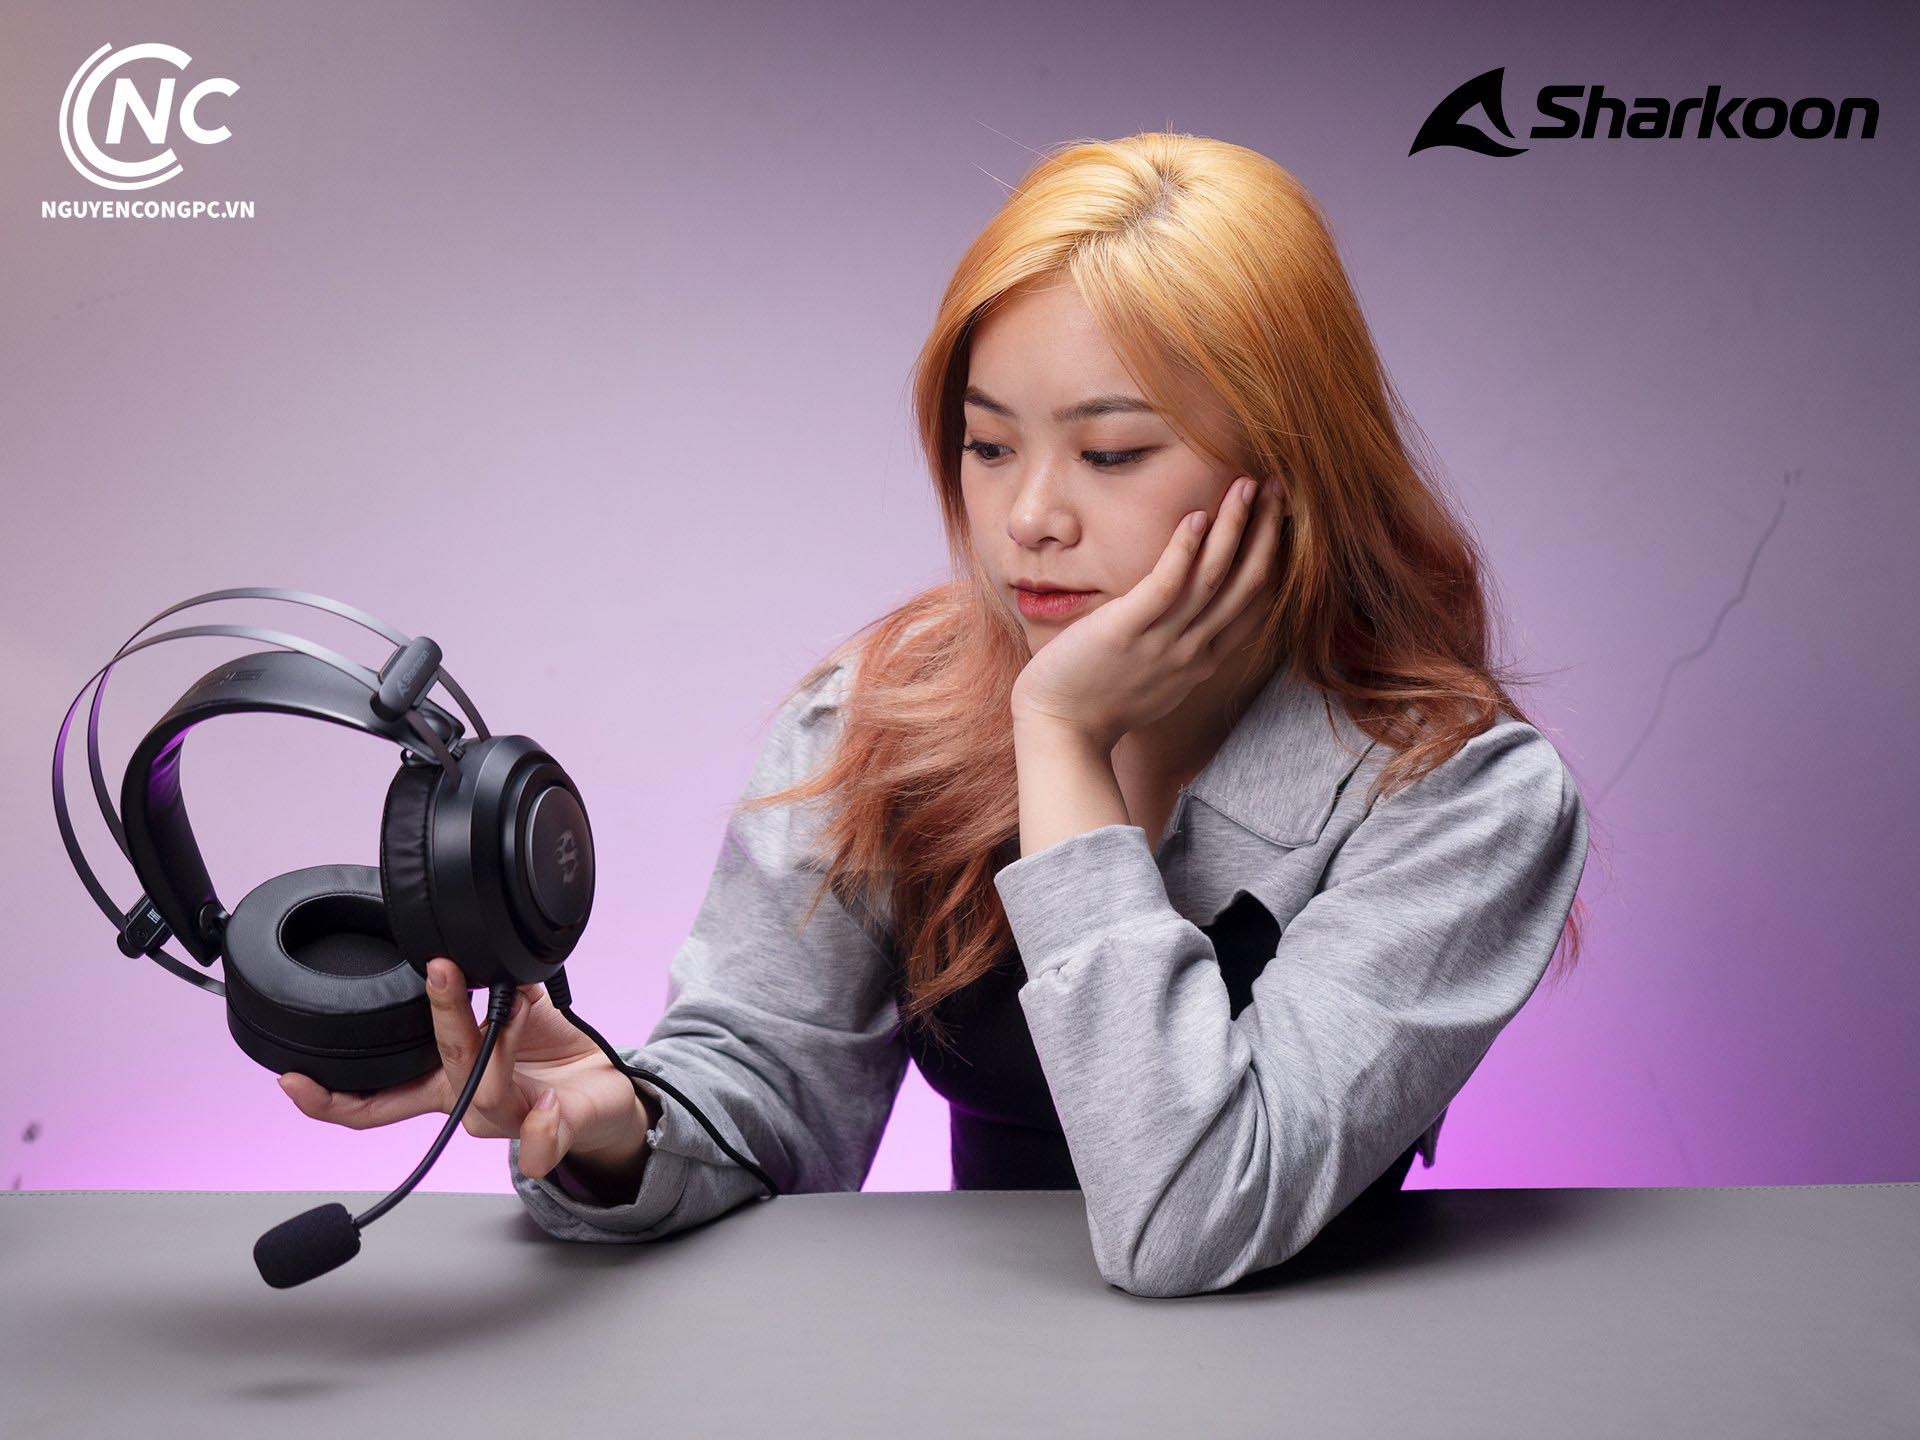 Nguyễn Công PC trở thành nhà phân phối linh kiện mới của Sharkoon tại Việt Nam